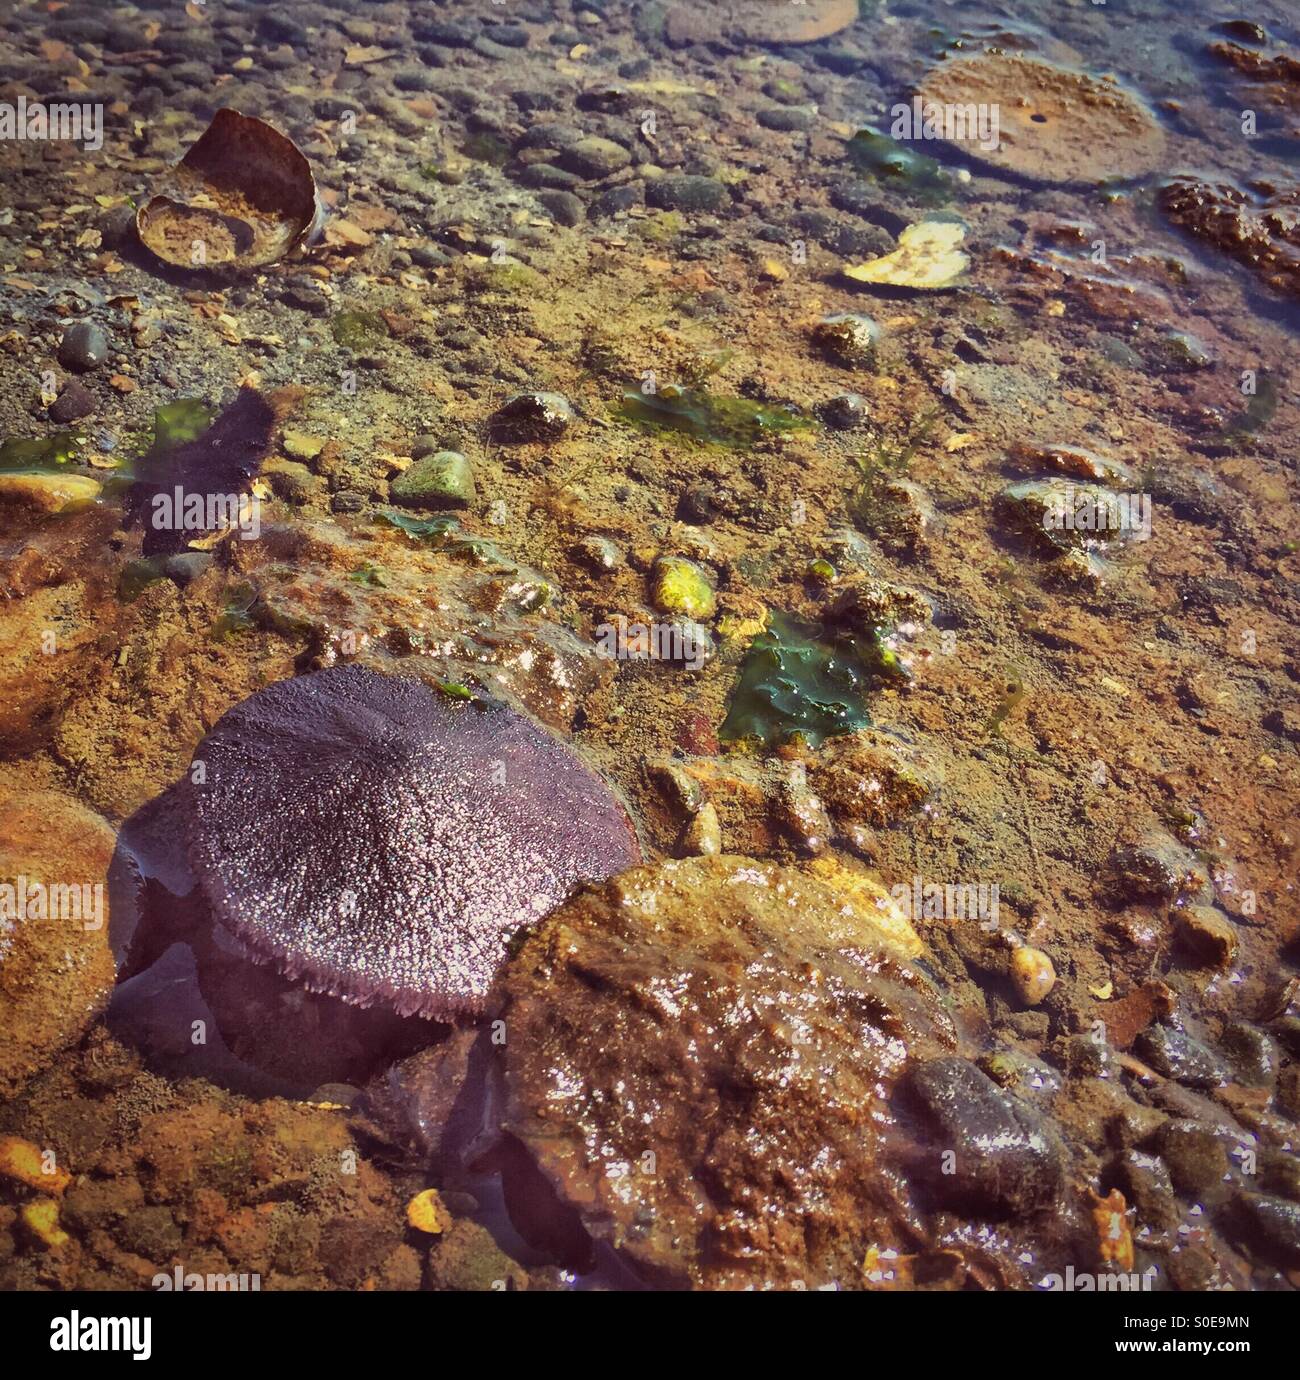 Un brillante púrpura Sand dollar vive justo debajo de la superficie del agua en el estado de Washington de Puget Sound. Foto de stock